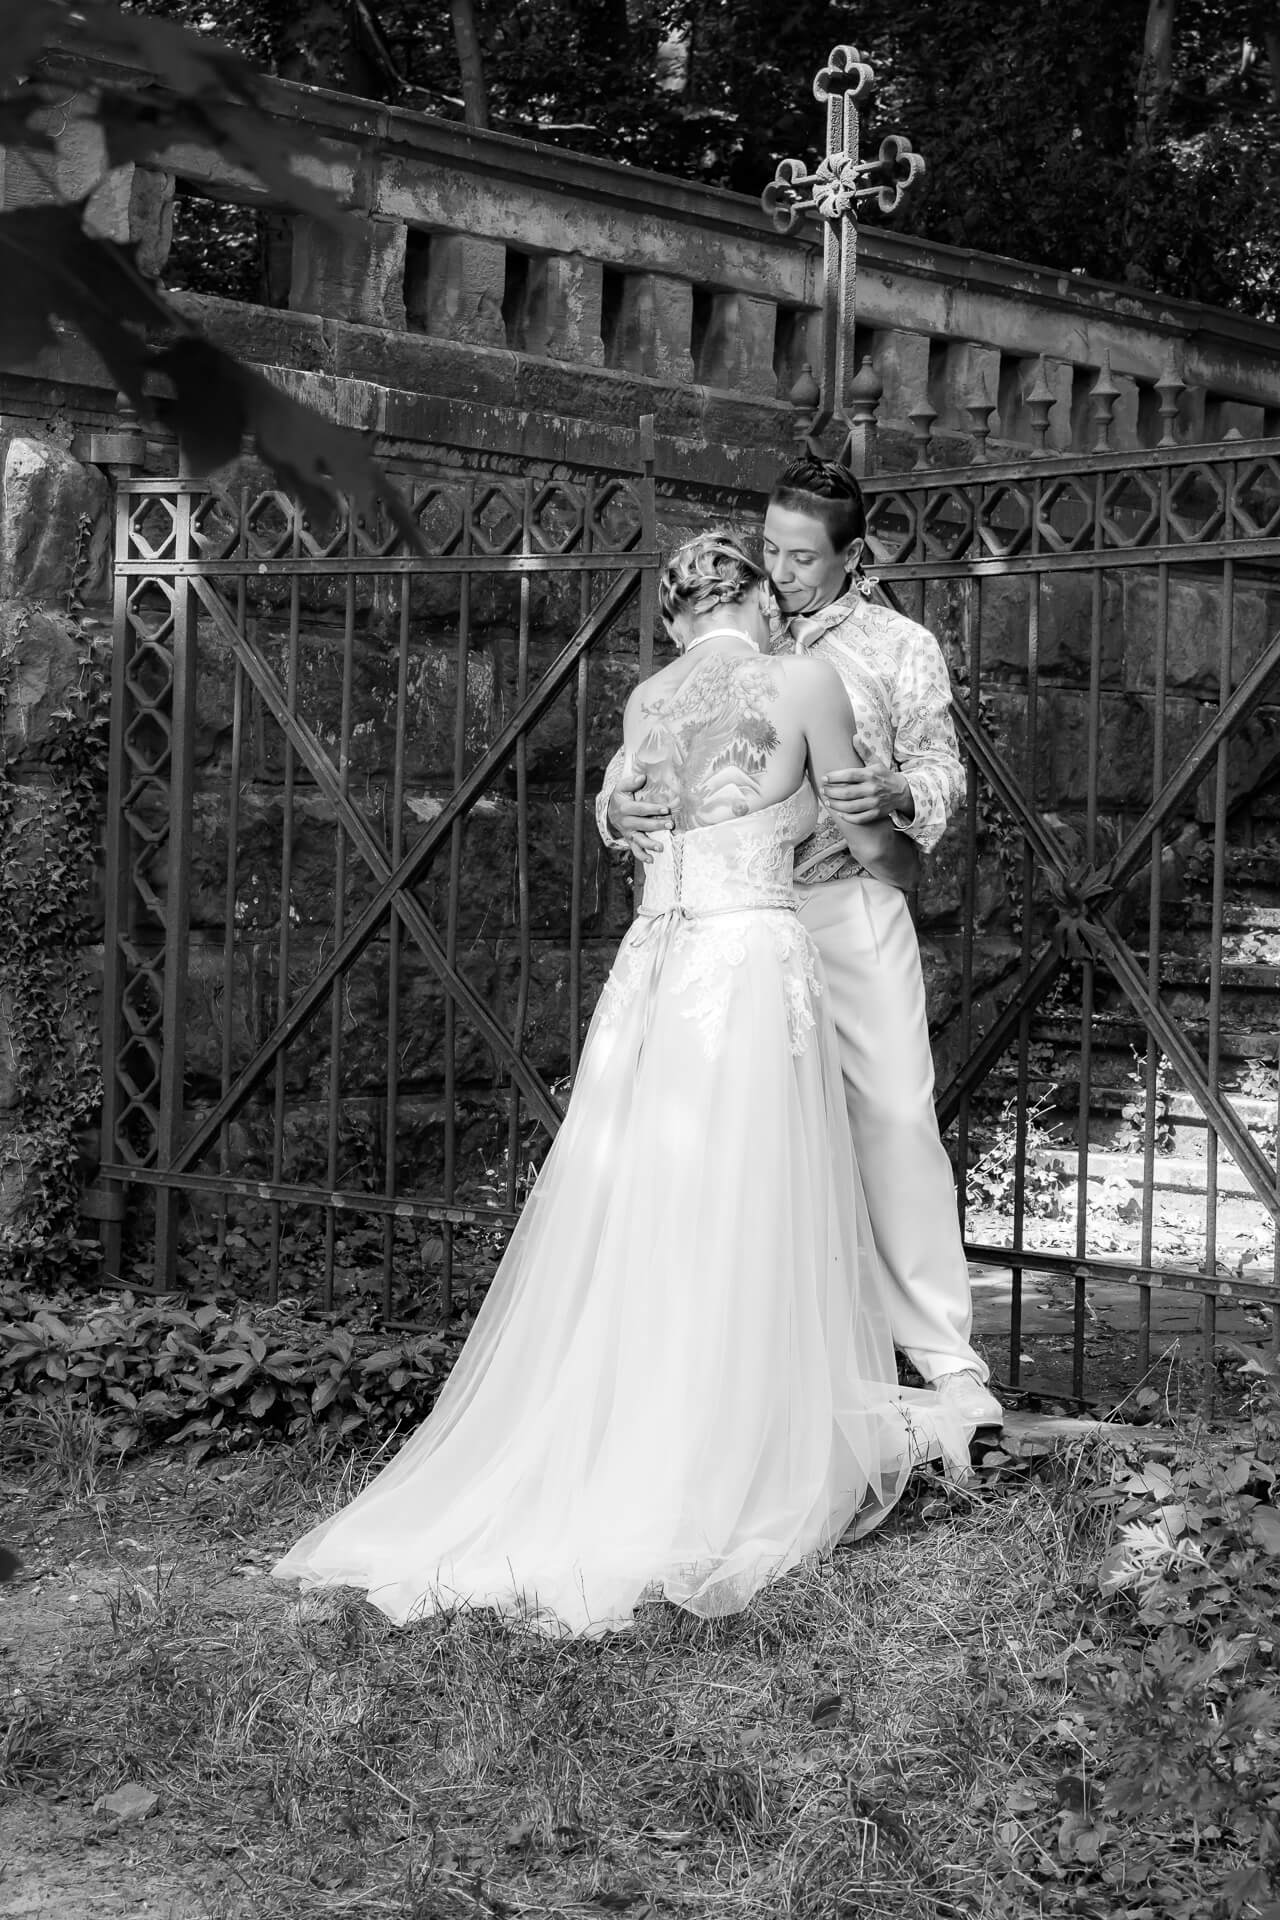 Brautpaar vor schmiedeeisernem Tor im Wald auf Treppe